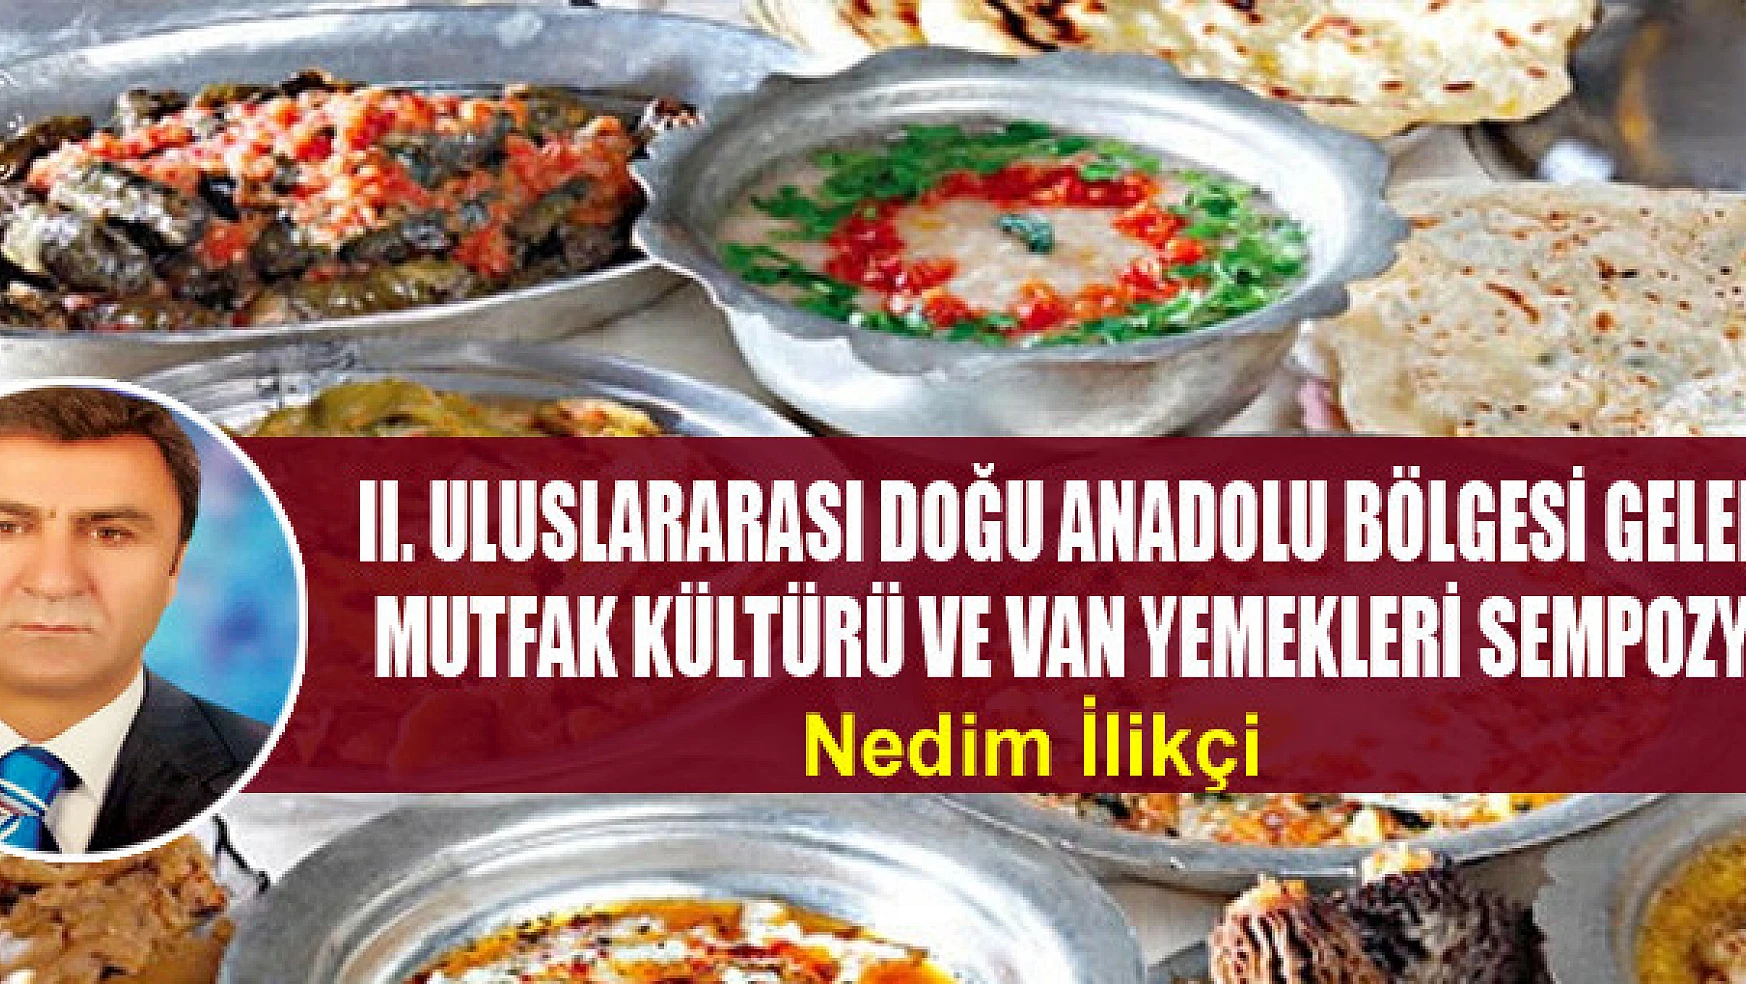   II. Uluslararası Doğu Anadolu Bölgesi Geleneksel Mutfak Kültürü ve Van Yemekleri Sempozyumu